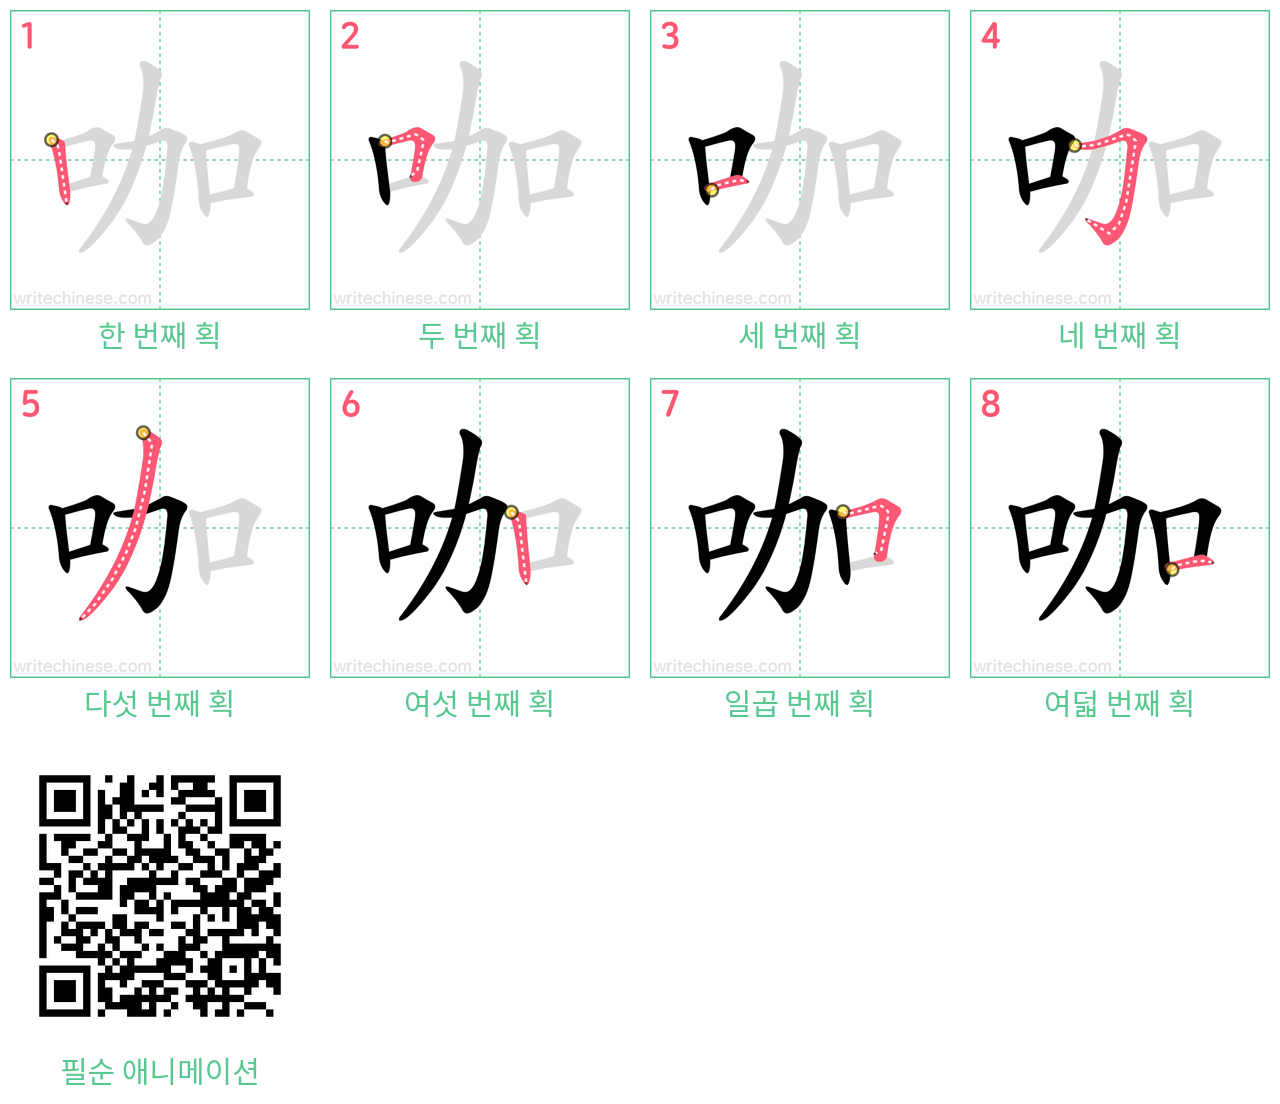 咖 step-by-step stroke order diagrams